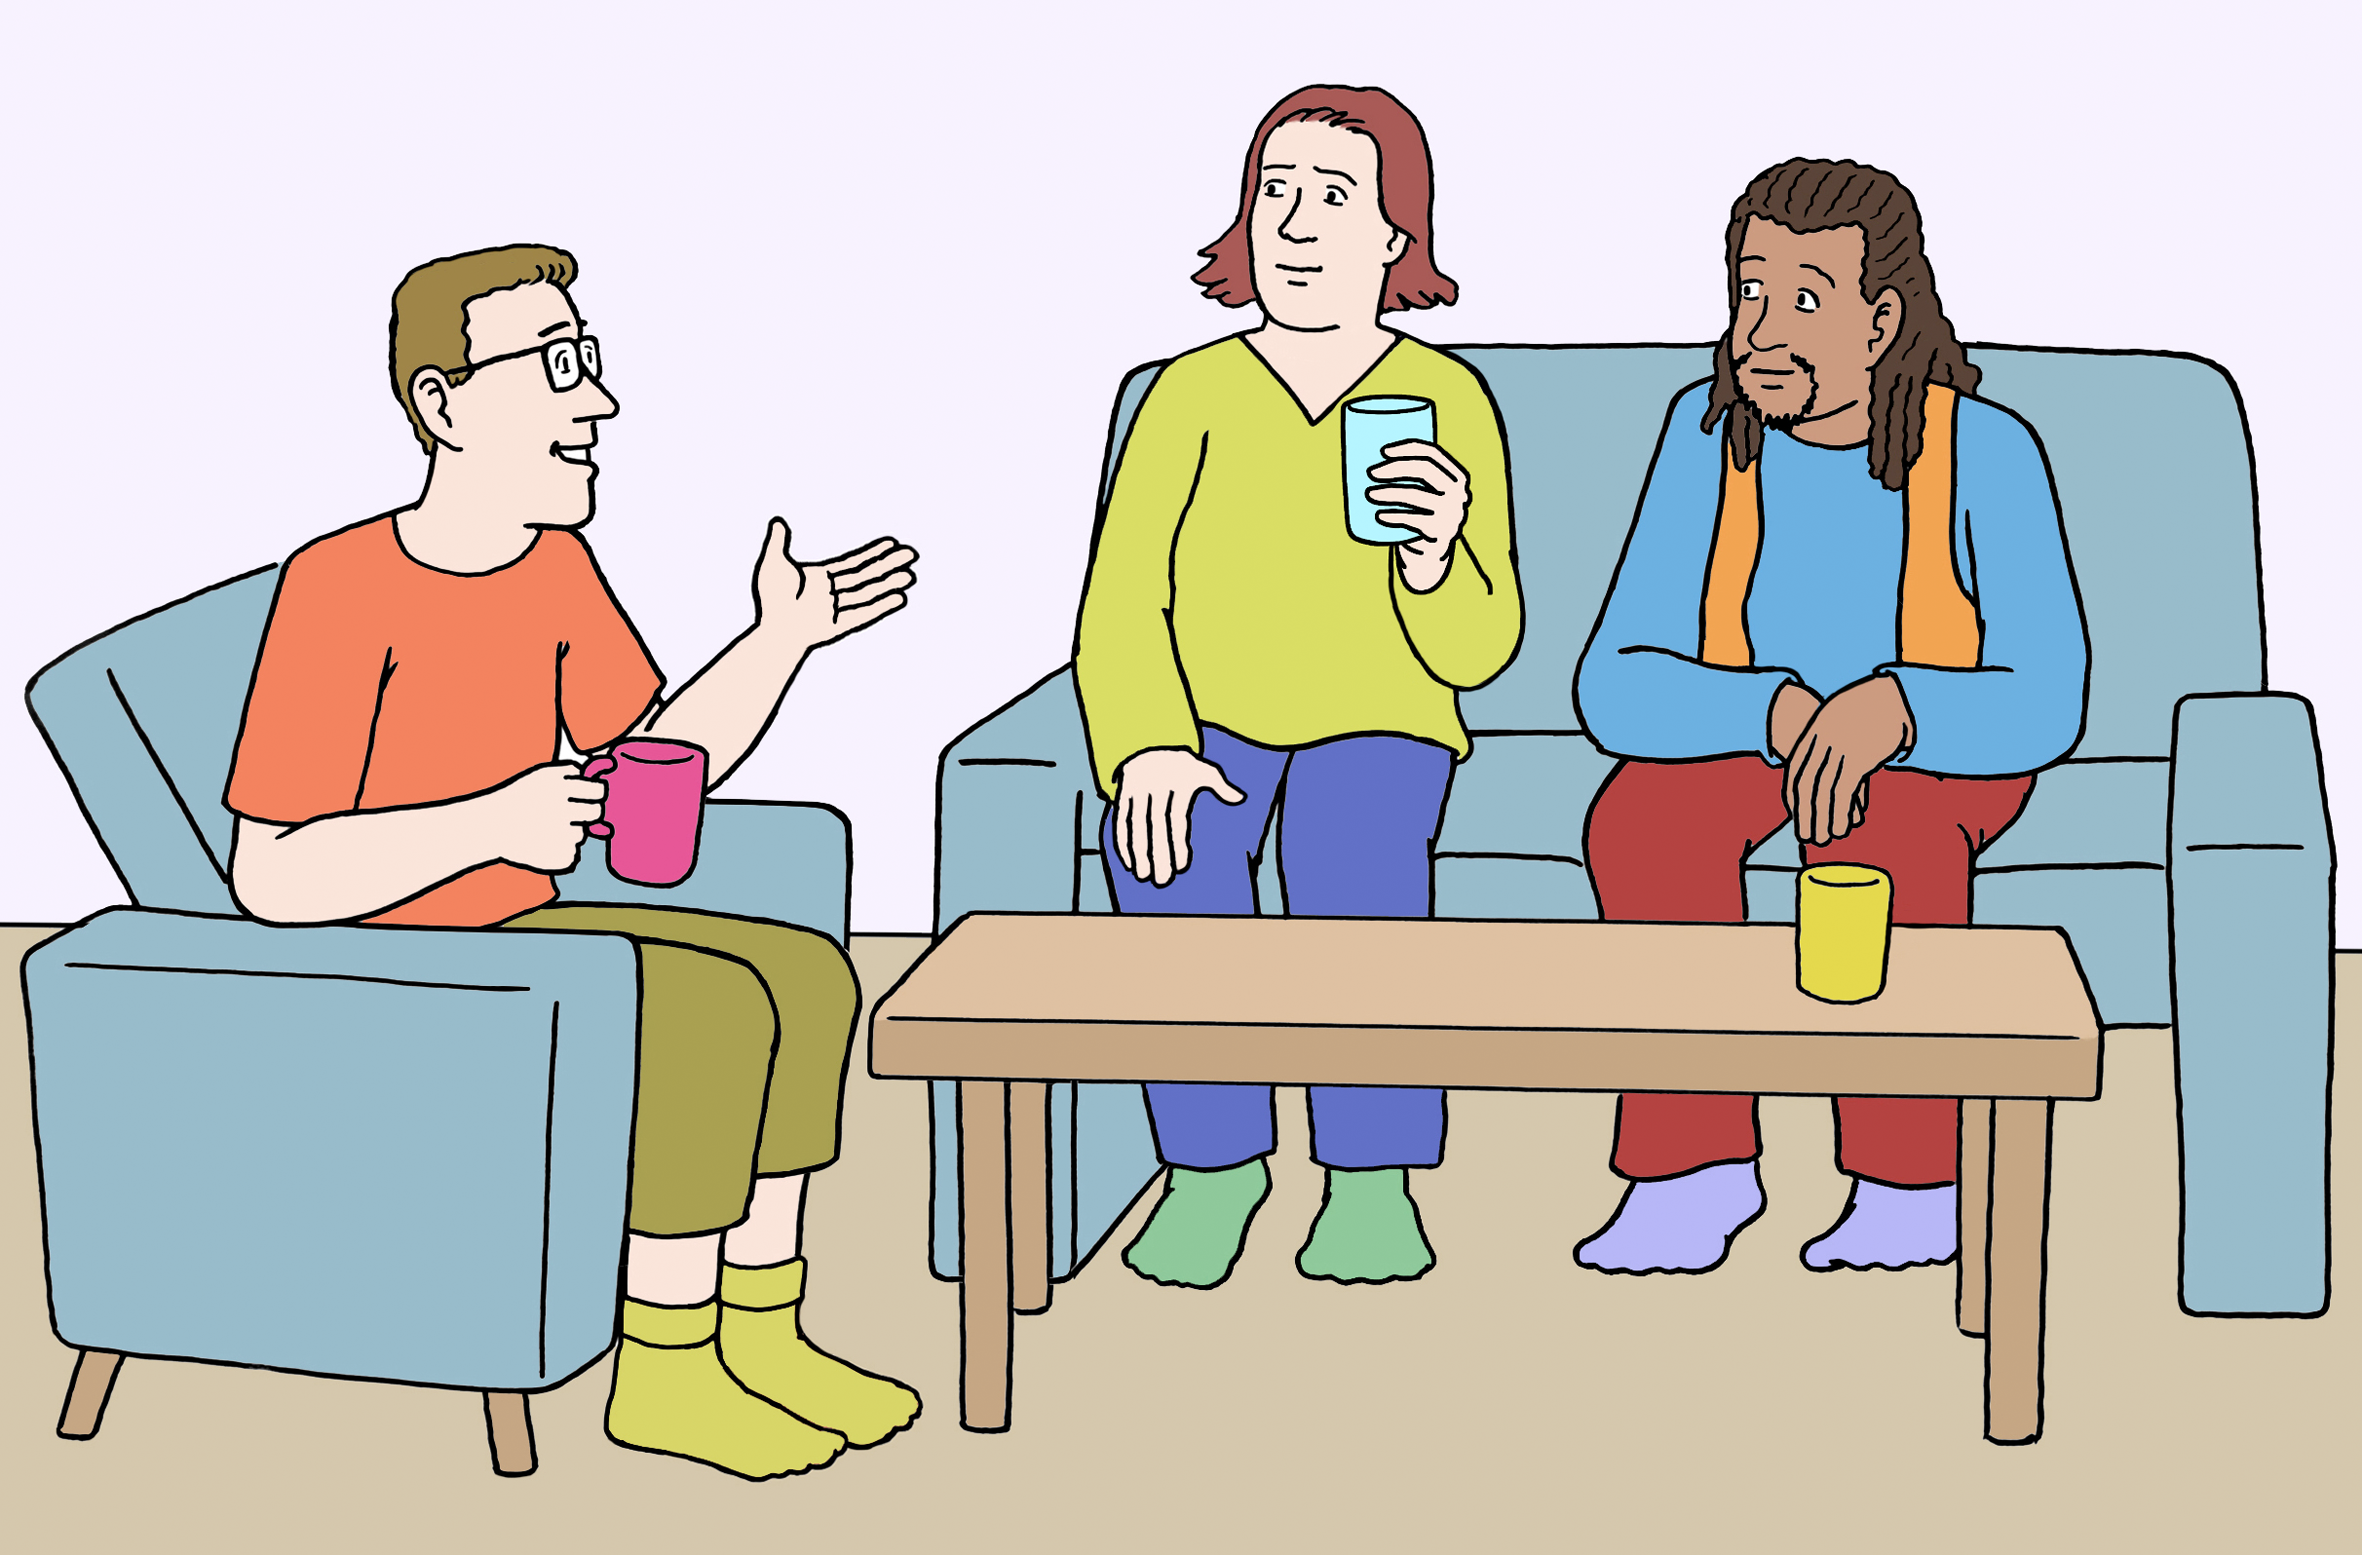 drei Menschen sitzen zusammen auf Sofas und sprechen miteinander